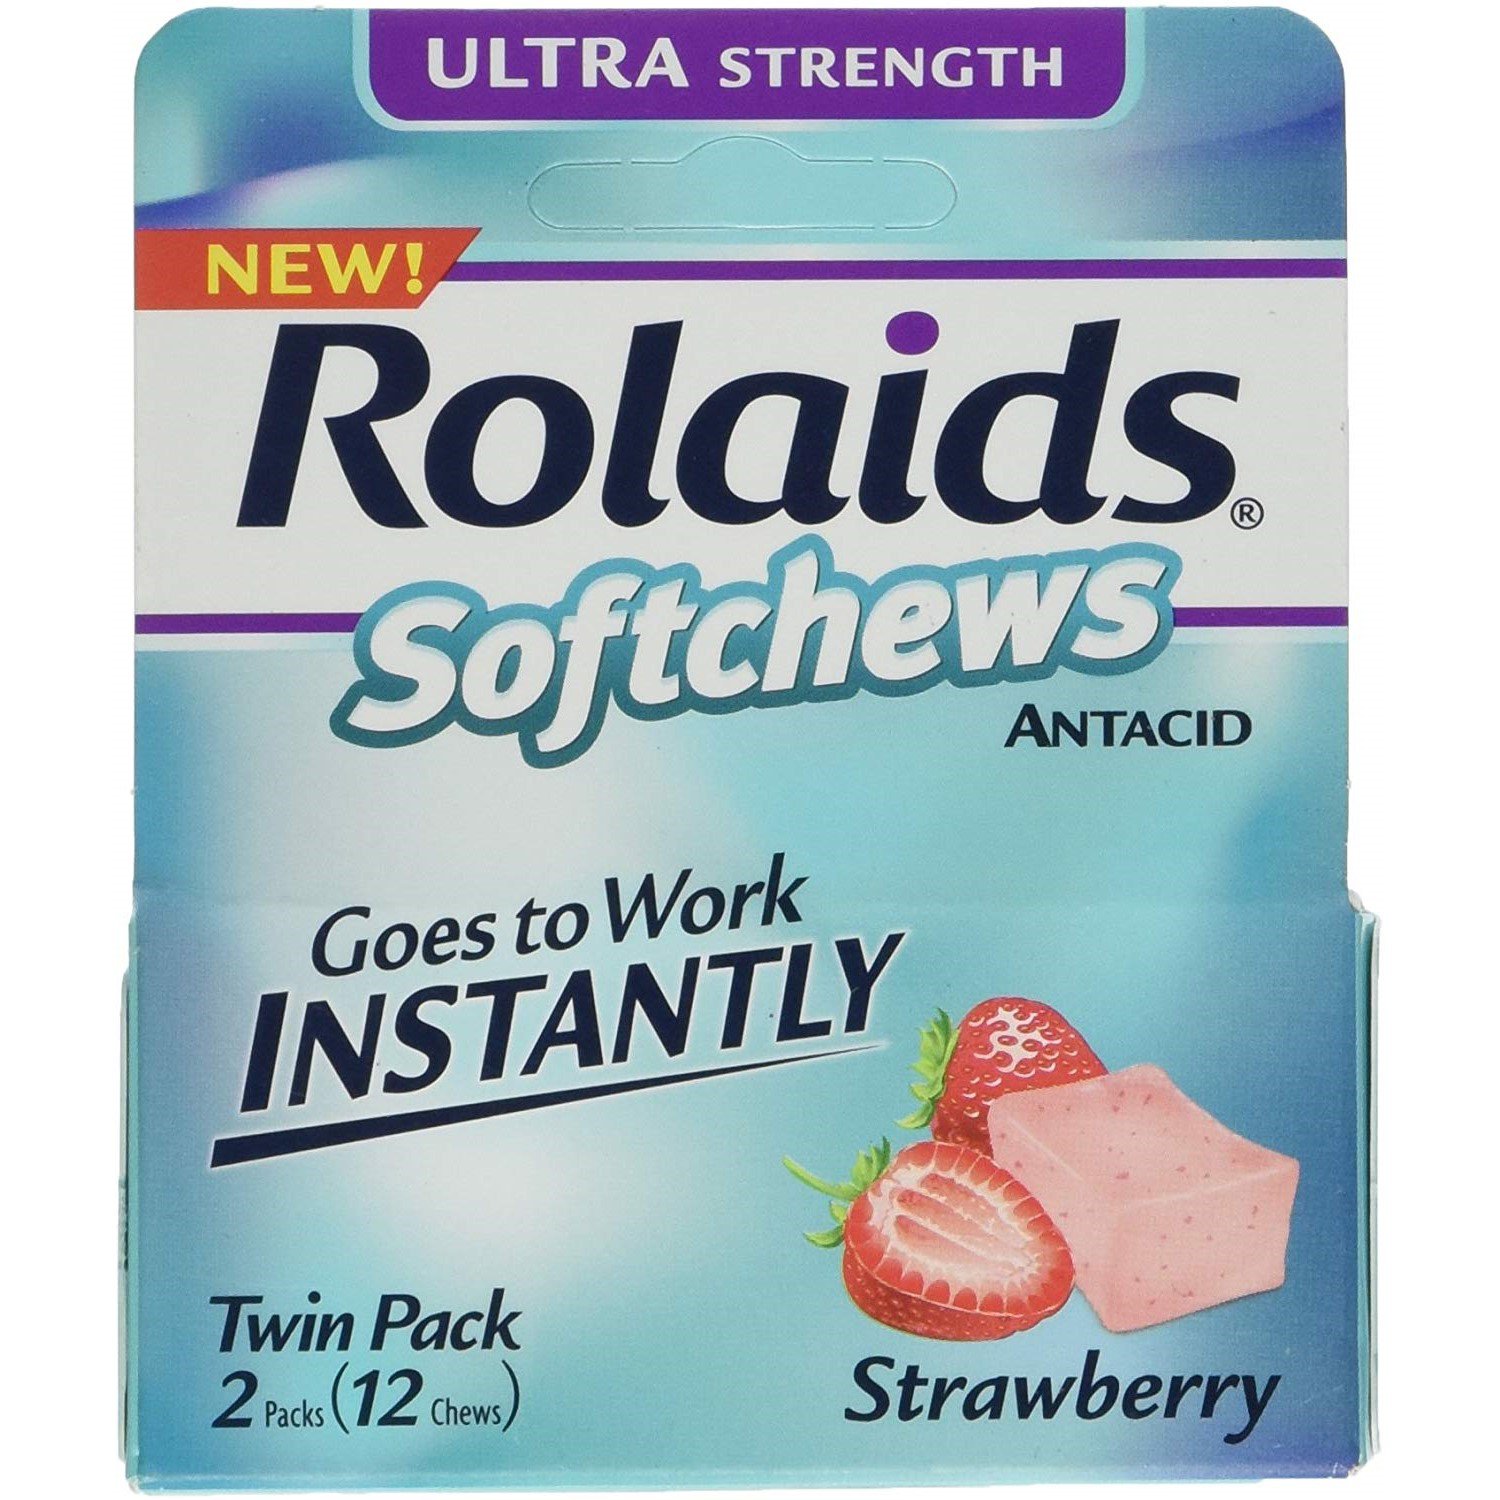 Antacid. Rolaids таблетки. Antacid Soft Chews. Strawberry flavor. Витамины от тошноты американские.